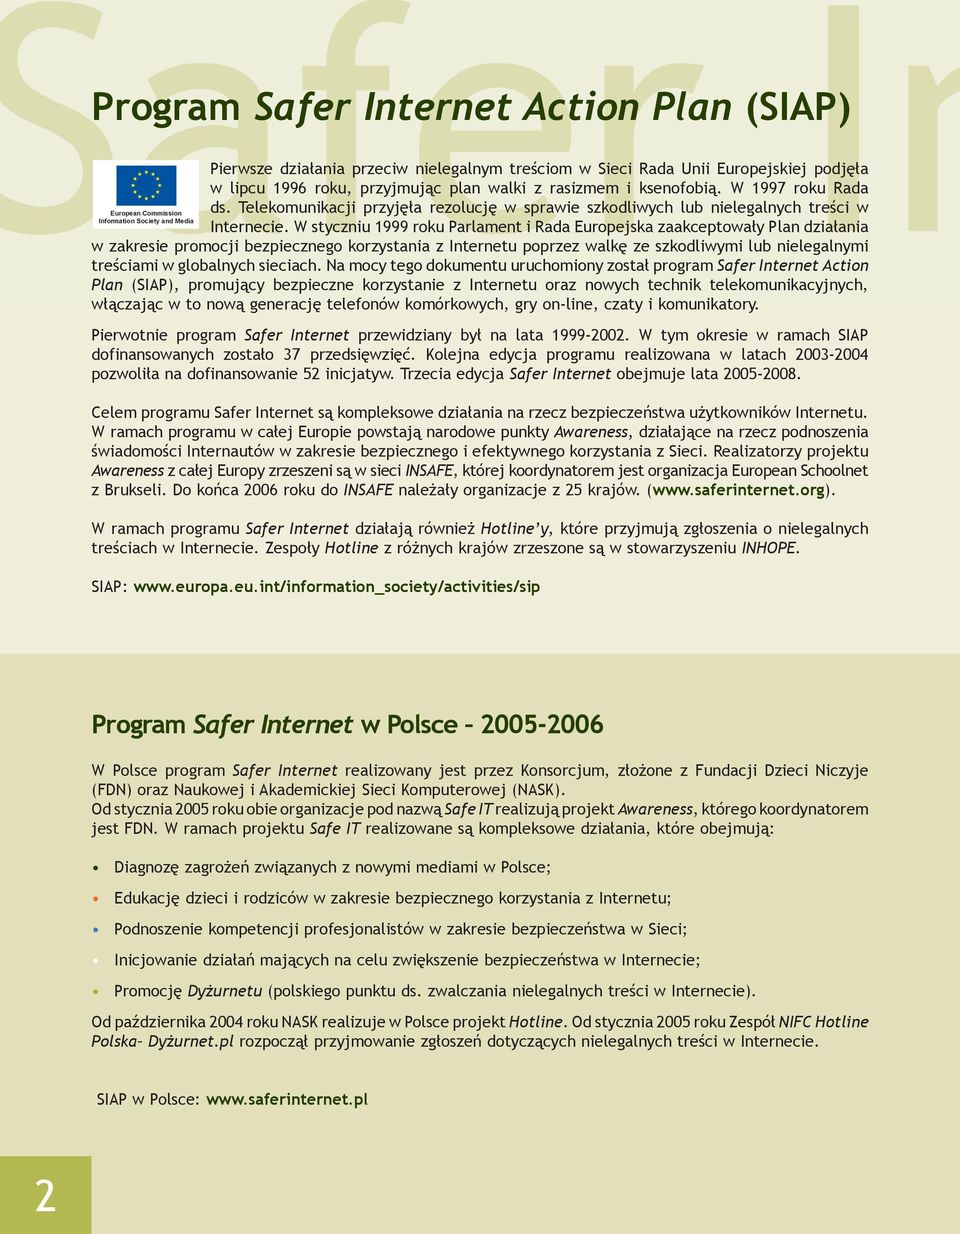 W styczniu 1999 roku Parlament i Rada Europejska zaakceptowały Plan działania w zakresie promocji bezpiecznego korzystania z Internetu poprzez walkę ze szkodliwymi lub nielegalnymi treściami w